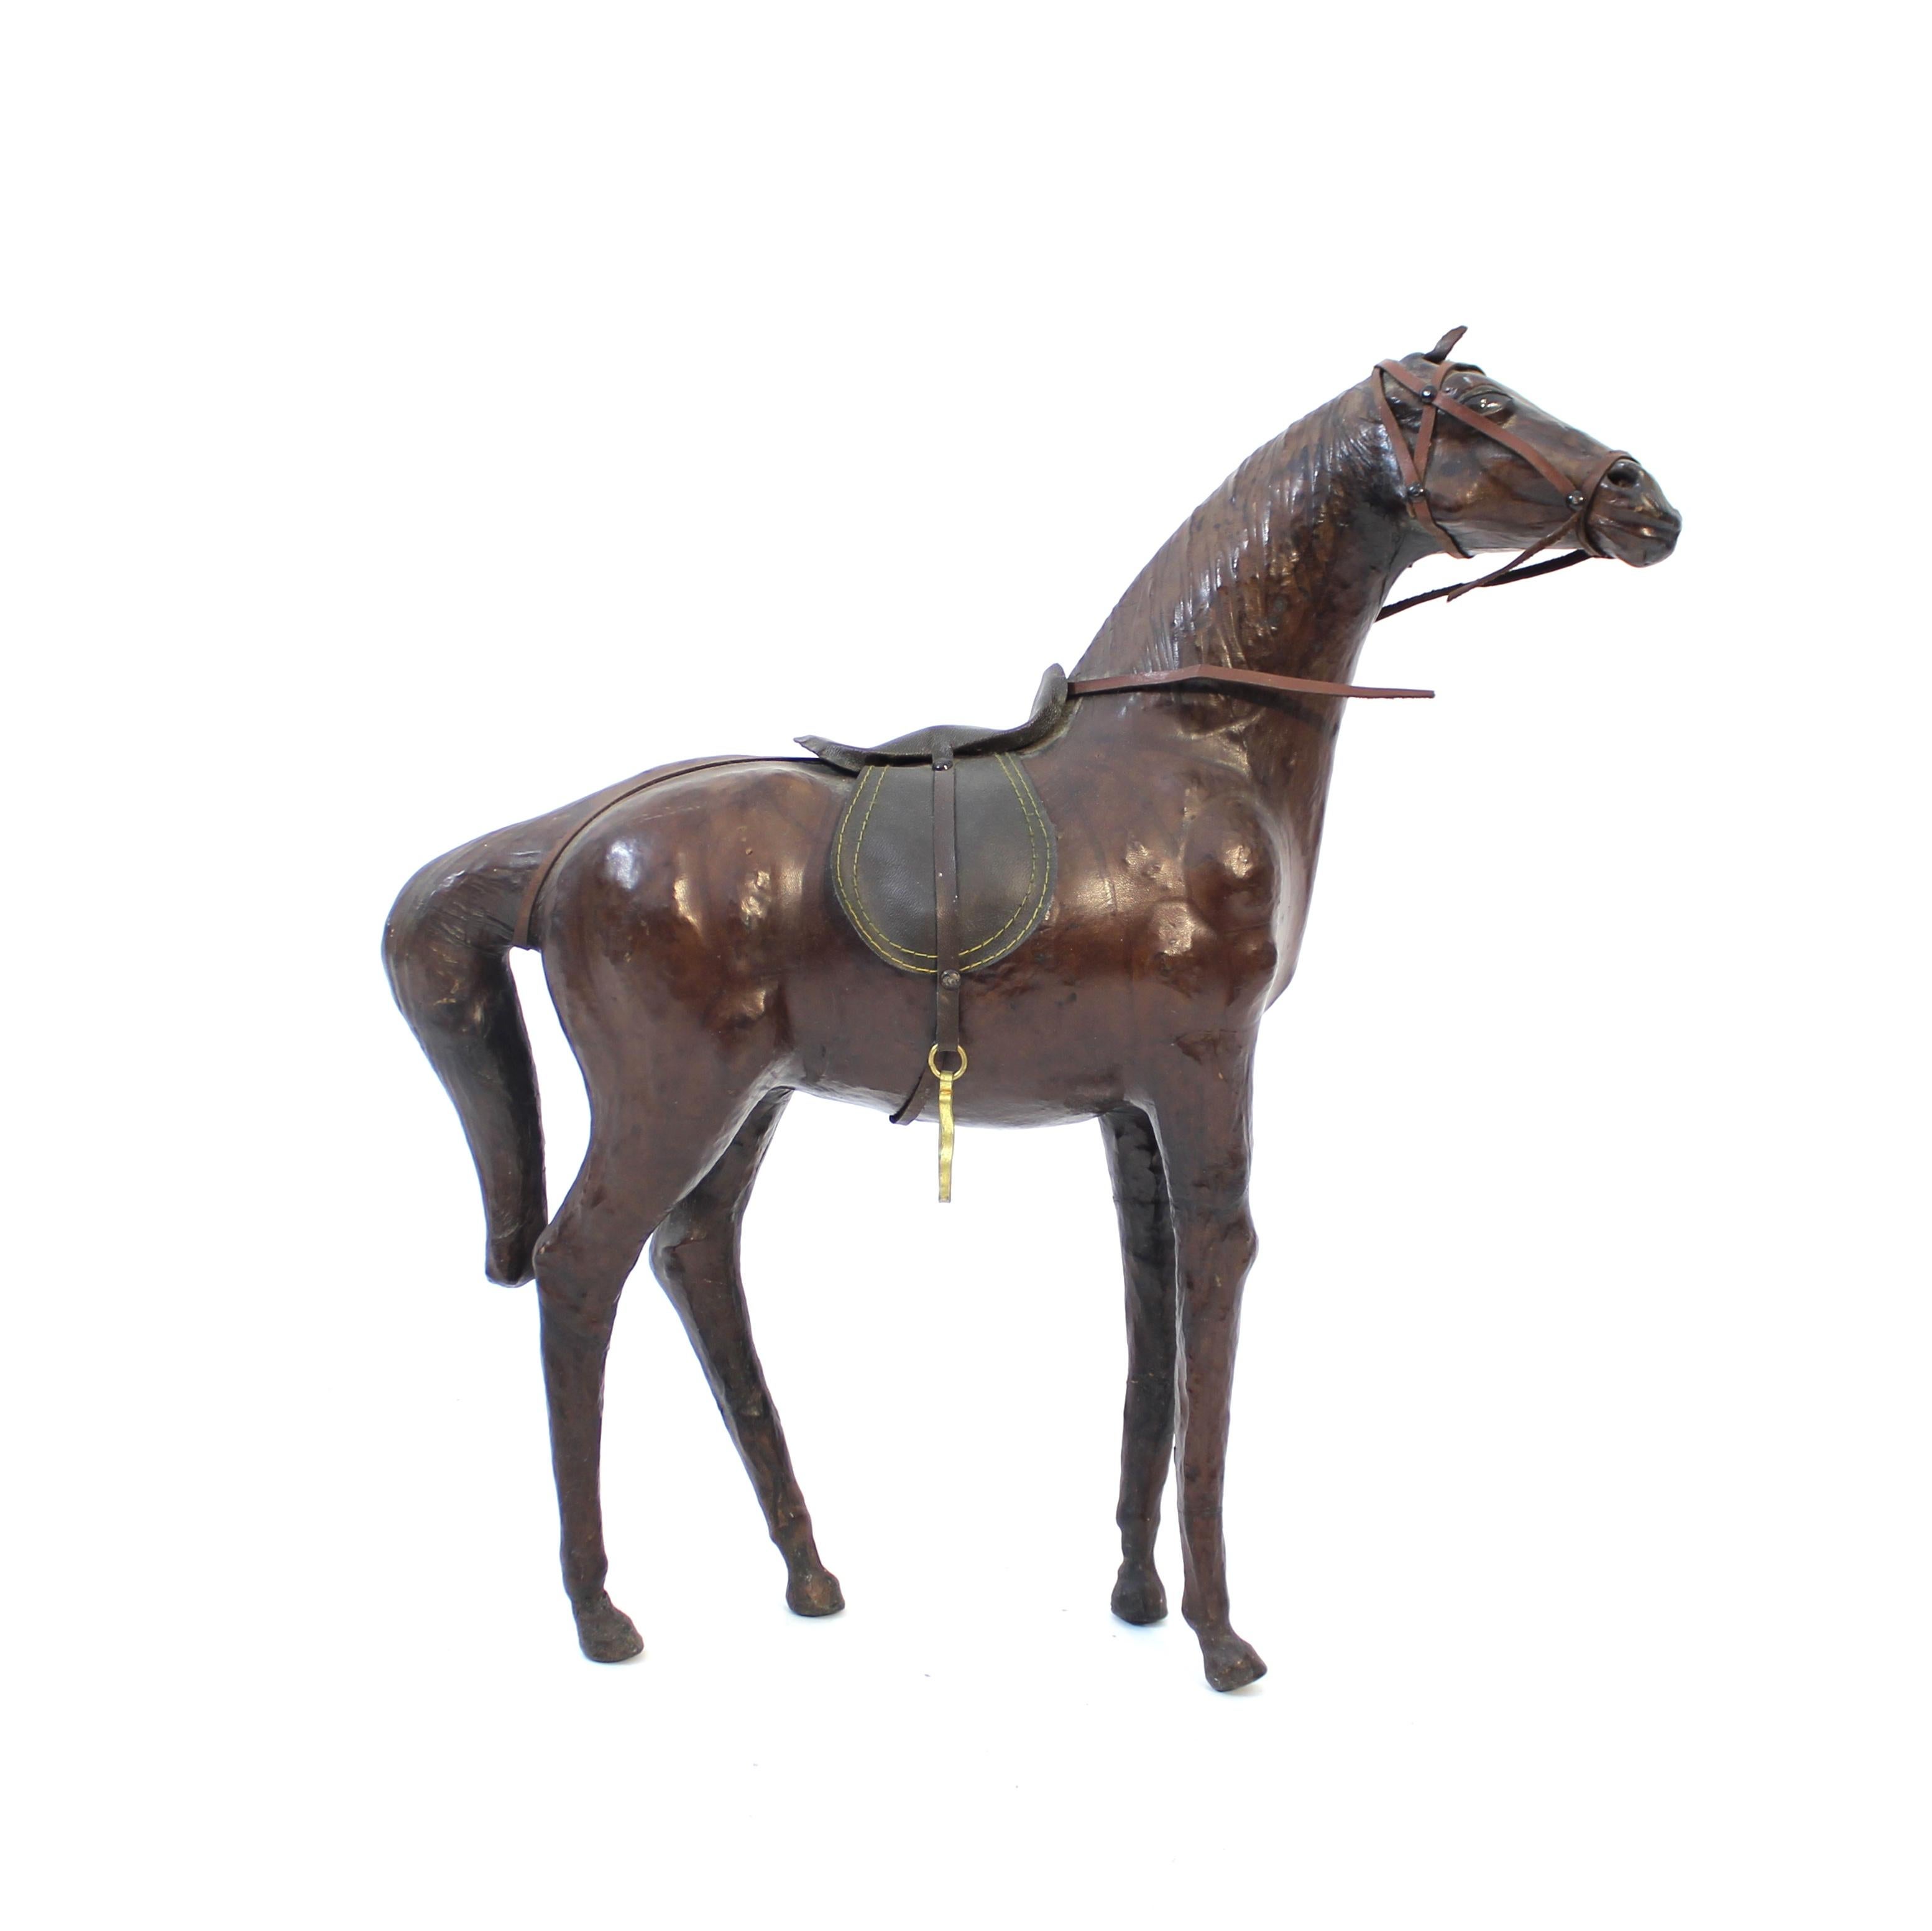 Sculpture/modèle de cheval en cuir véritable des années 1960 ou 1970. Bien réalisé, avec de bonnes proportions et de bons détails. Très décoratif, il s'intègre parfaitement dans tout type d'intérieur, du moderne scandinave à l'éclectique. Bon et